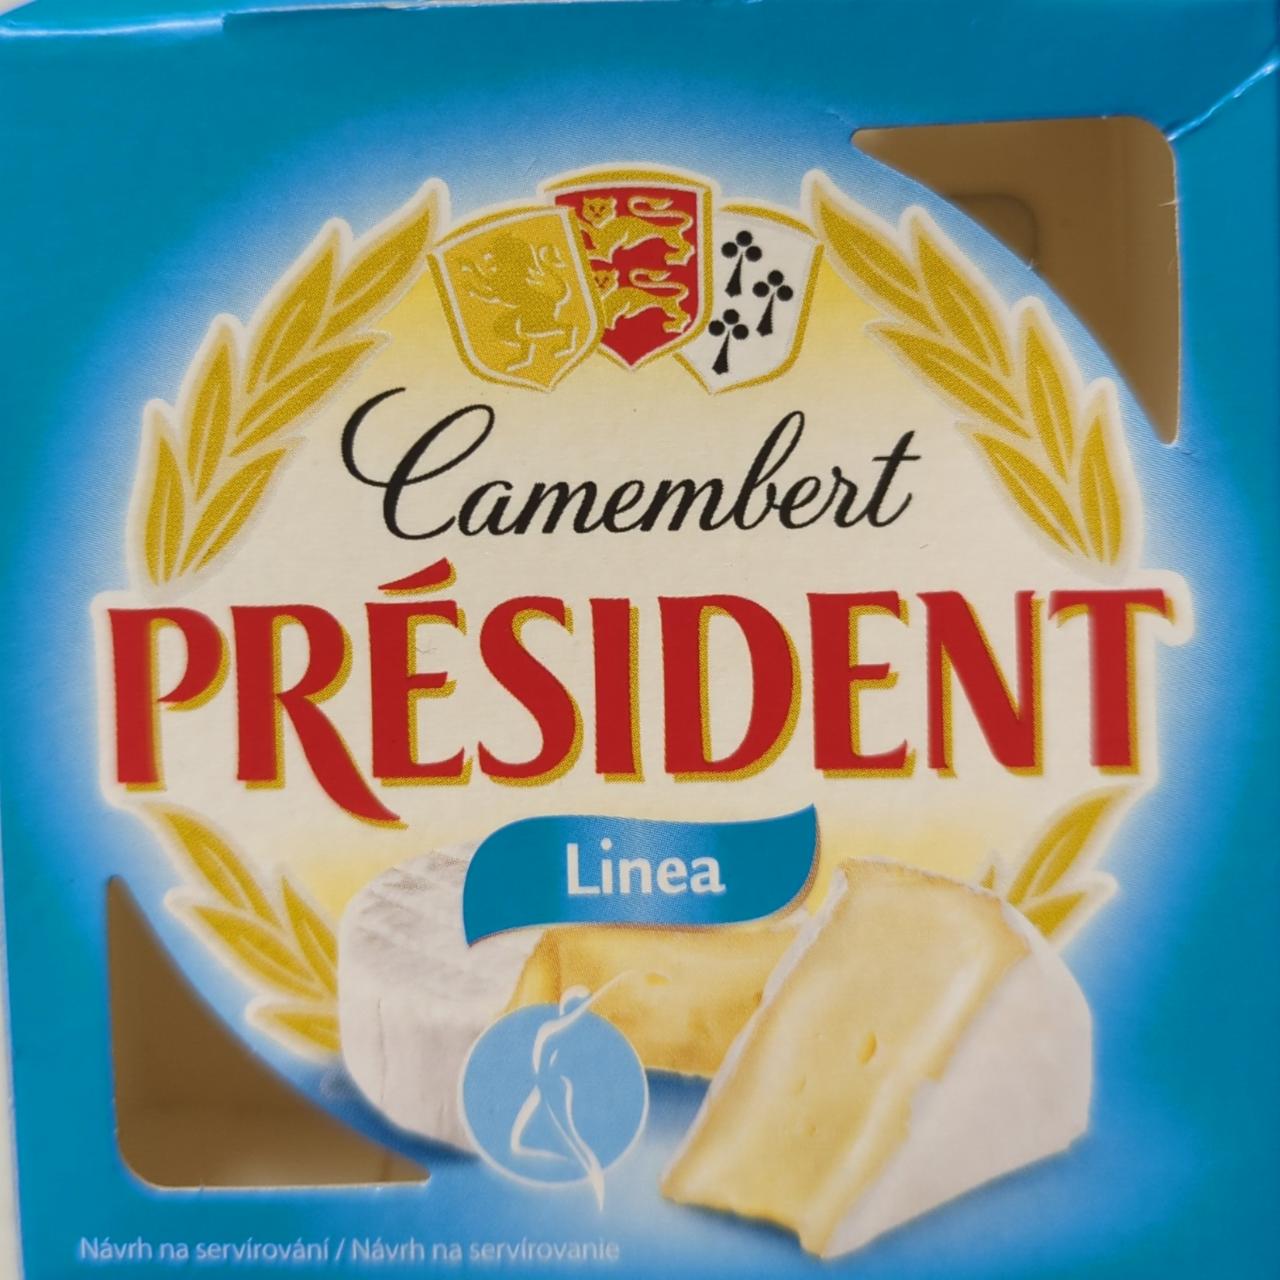 Képek - Camembert Linea (nemespenésszel érlelt félzsíros lágy sajt) Président